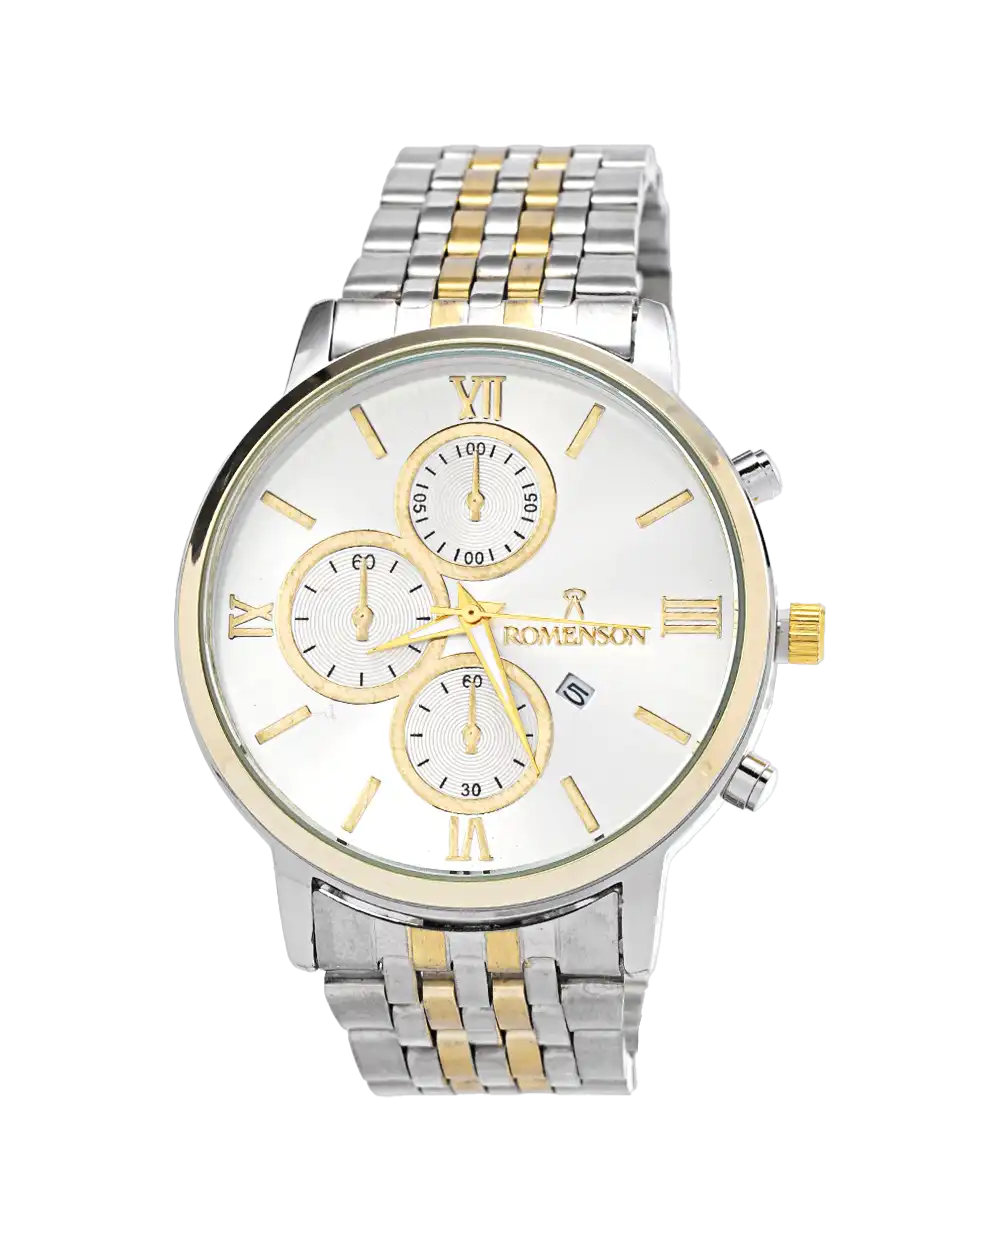 خرید ساعت مچی مردانه رومانسون ROMANSON مدل 1727 صفحه ی سفید و بند نقره ای طلایی به همراه جعبه و ارسال رایگان به سراسر ایران | ساعت romenson